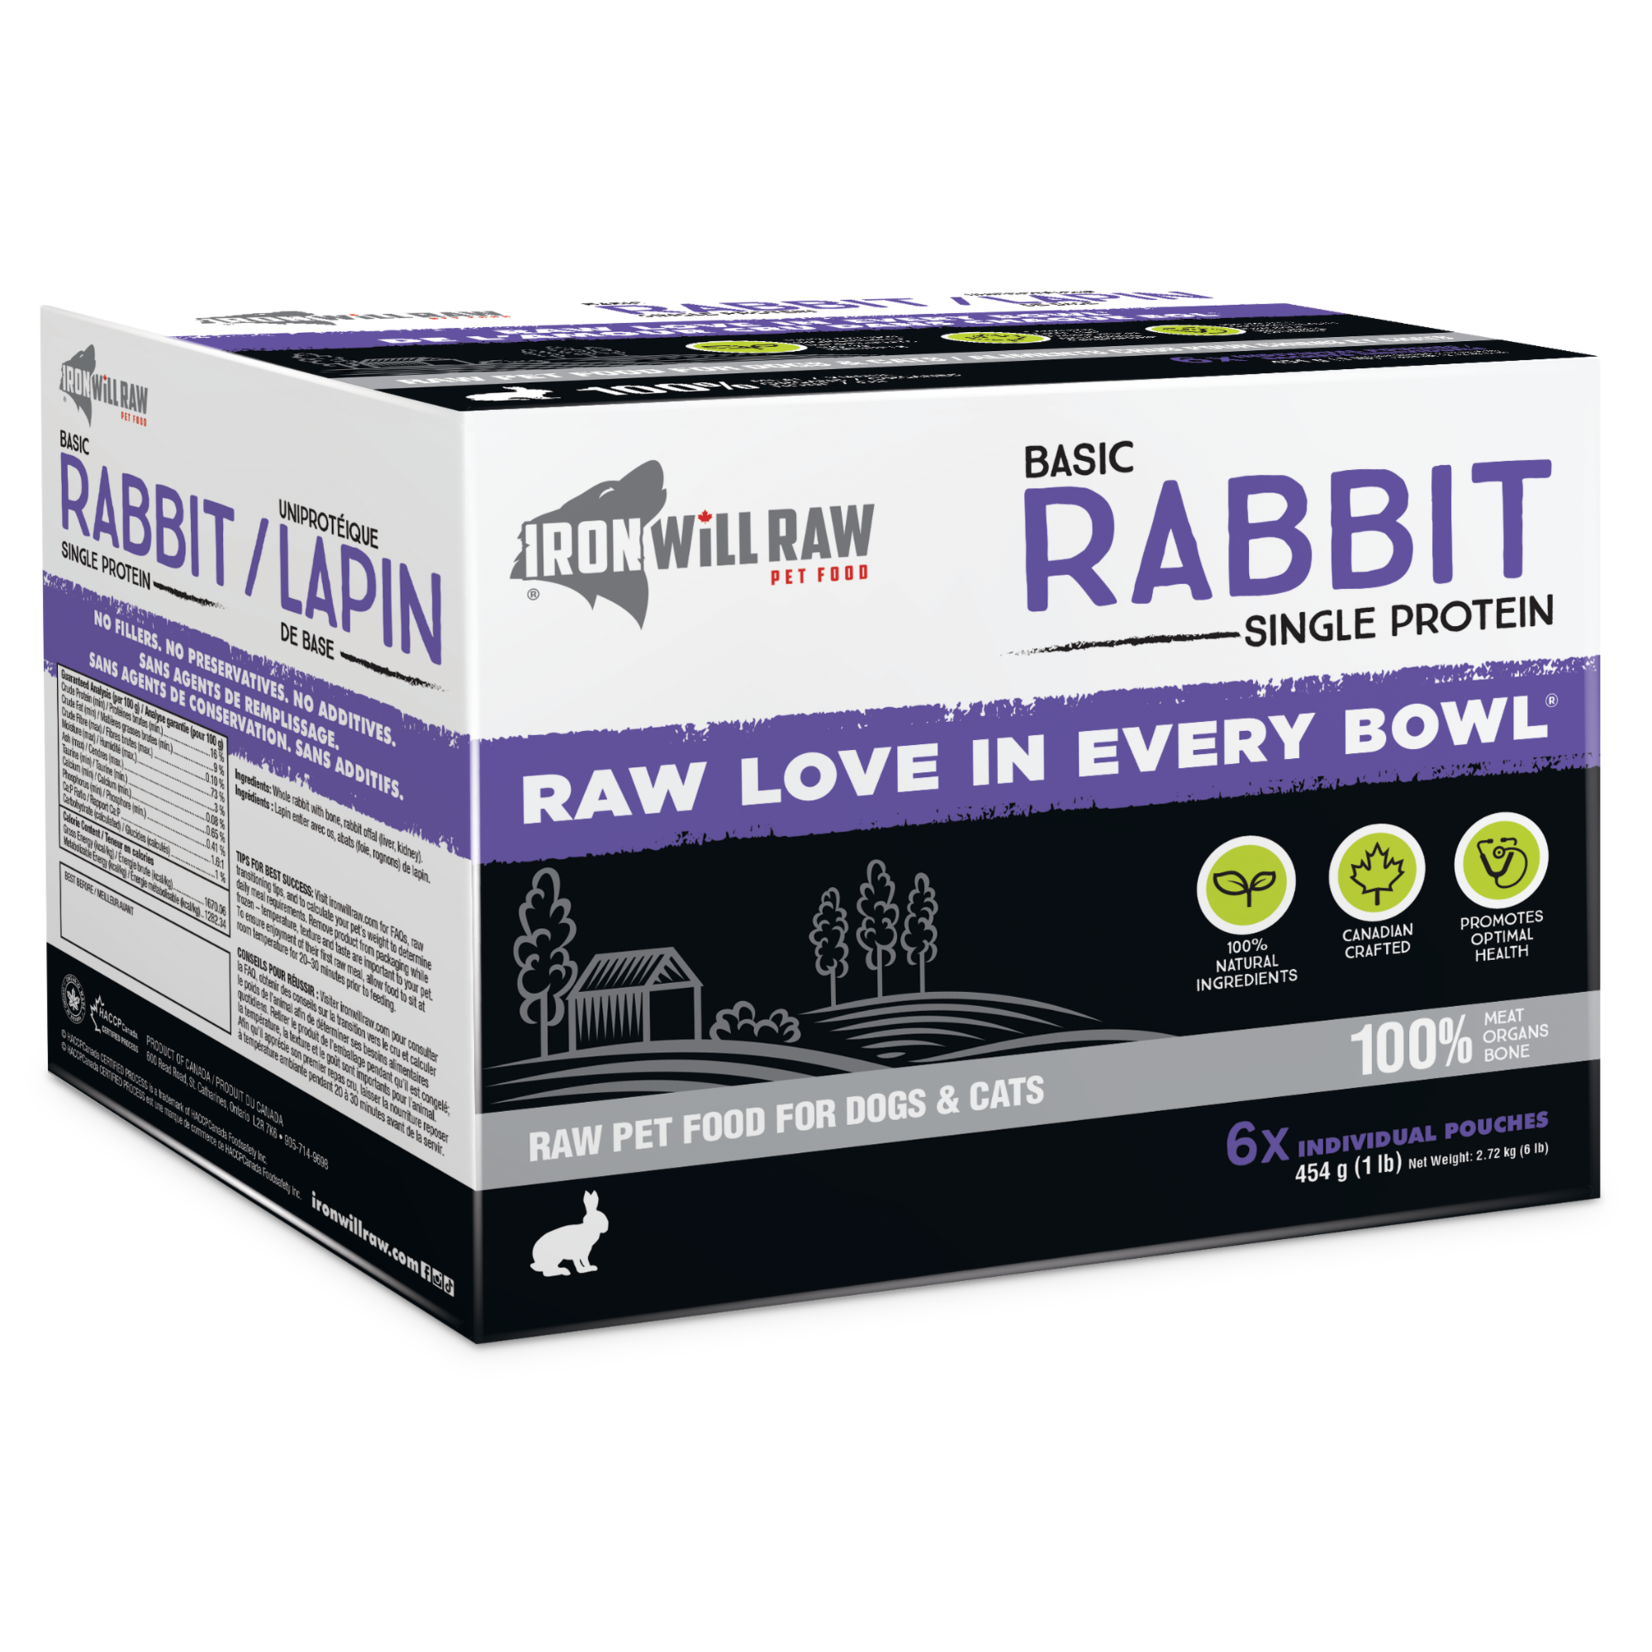 Iron Will Raw Iron Will Raw: Basic Rabbit 6lb